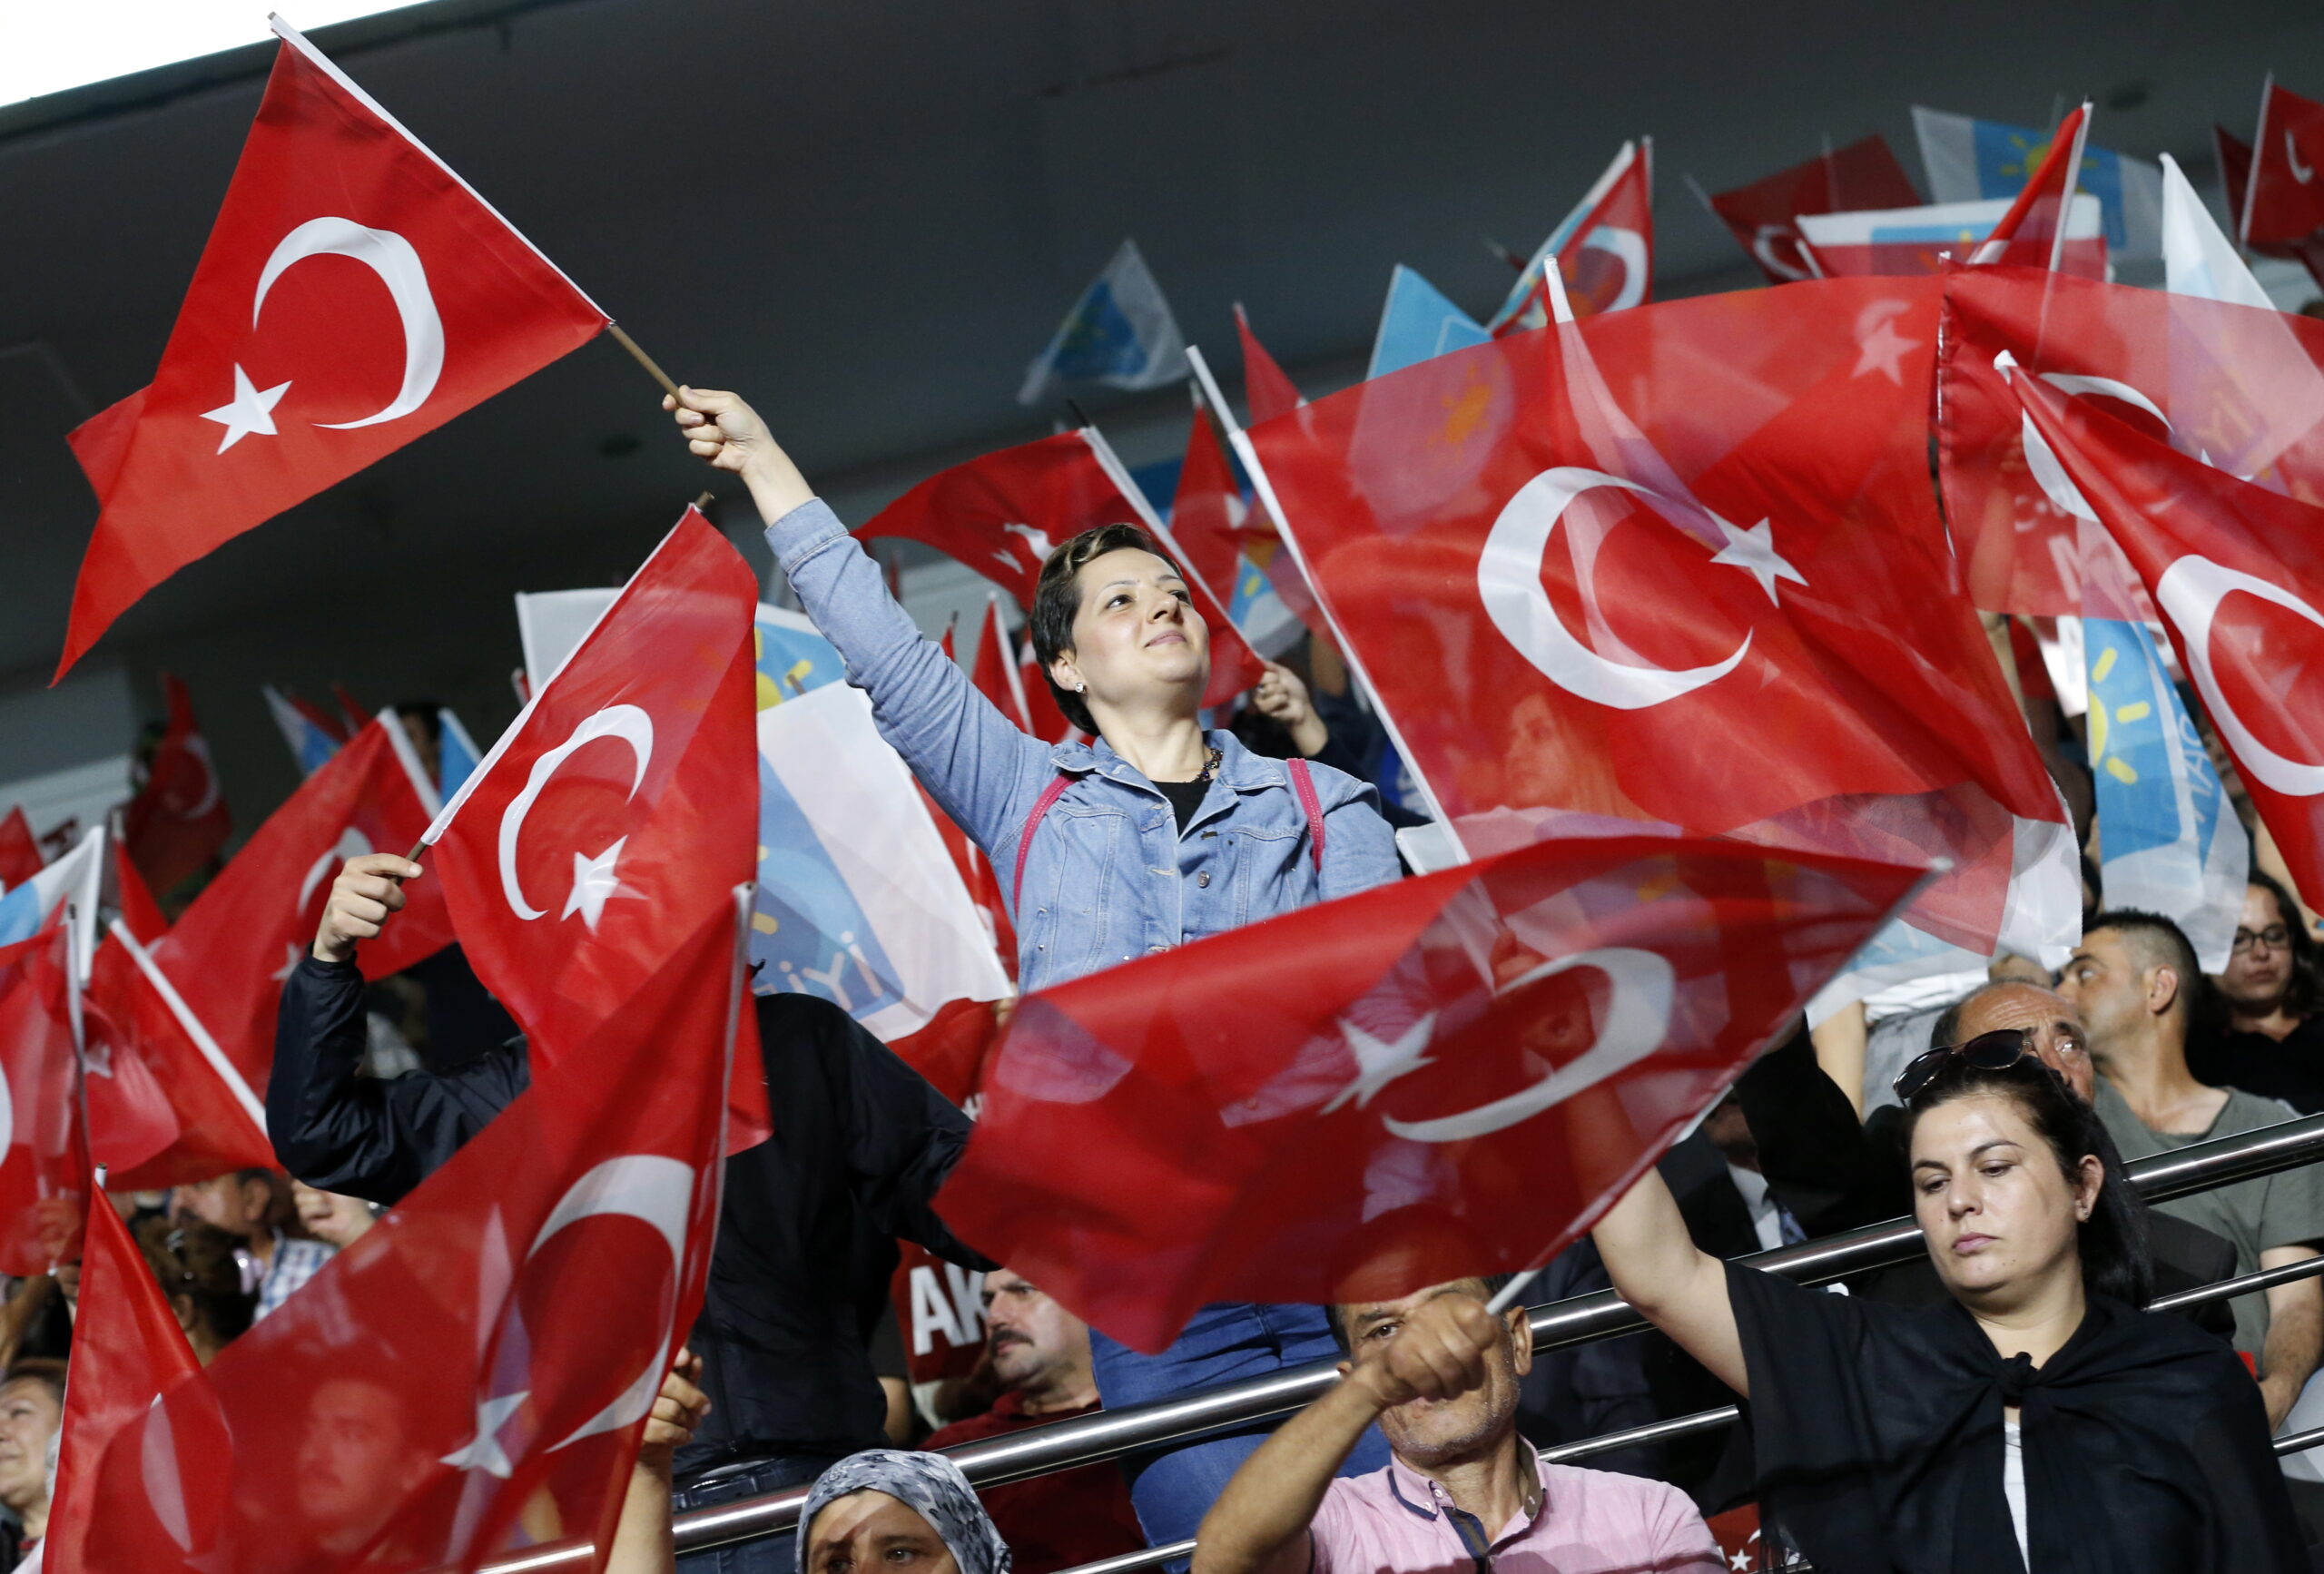 Ο Ερντογάν και η (ετερόκλητη) συμμαχία των έξι! Η ανατομία της τουρκικής αντιπολίτευσης στις εκλογές της 14ης Μαΐου